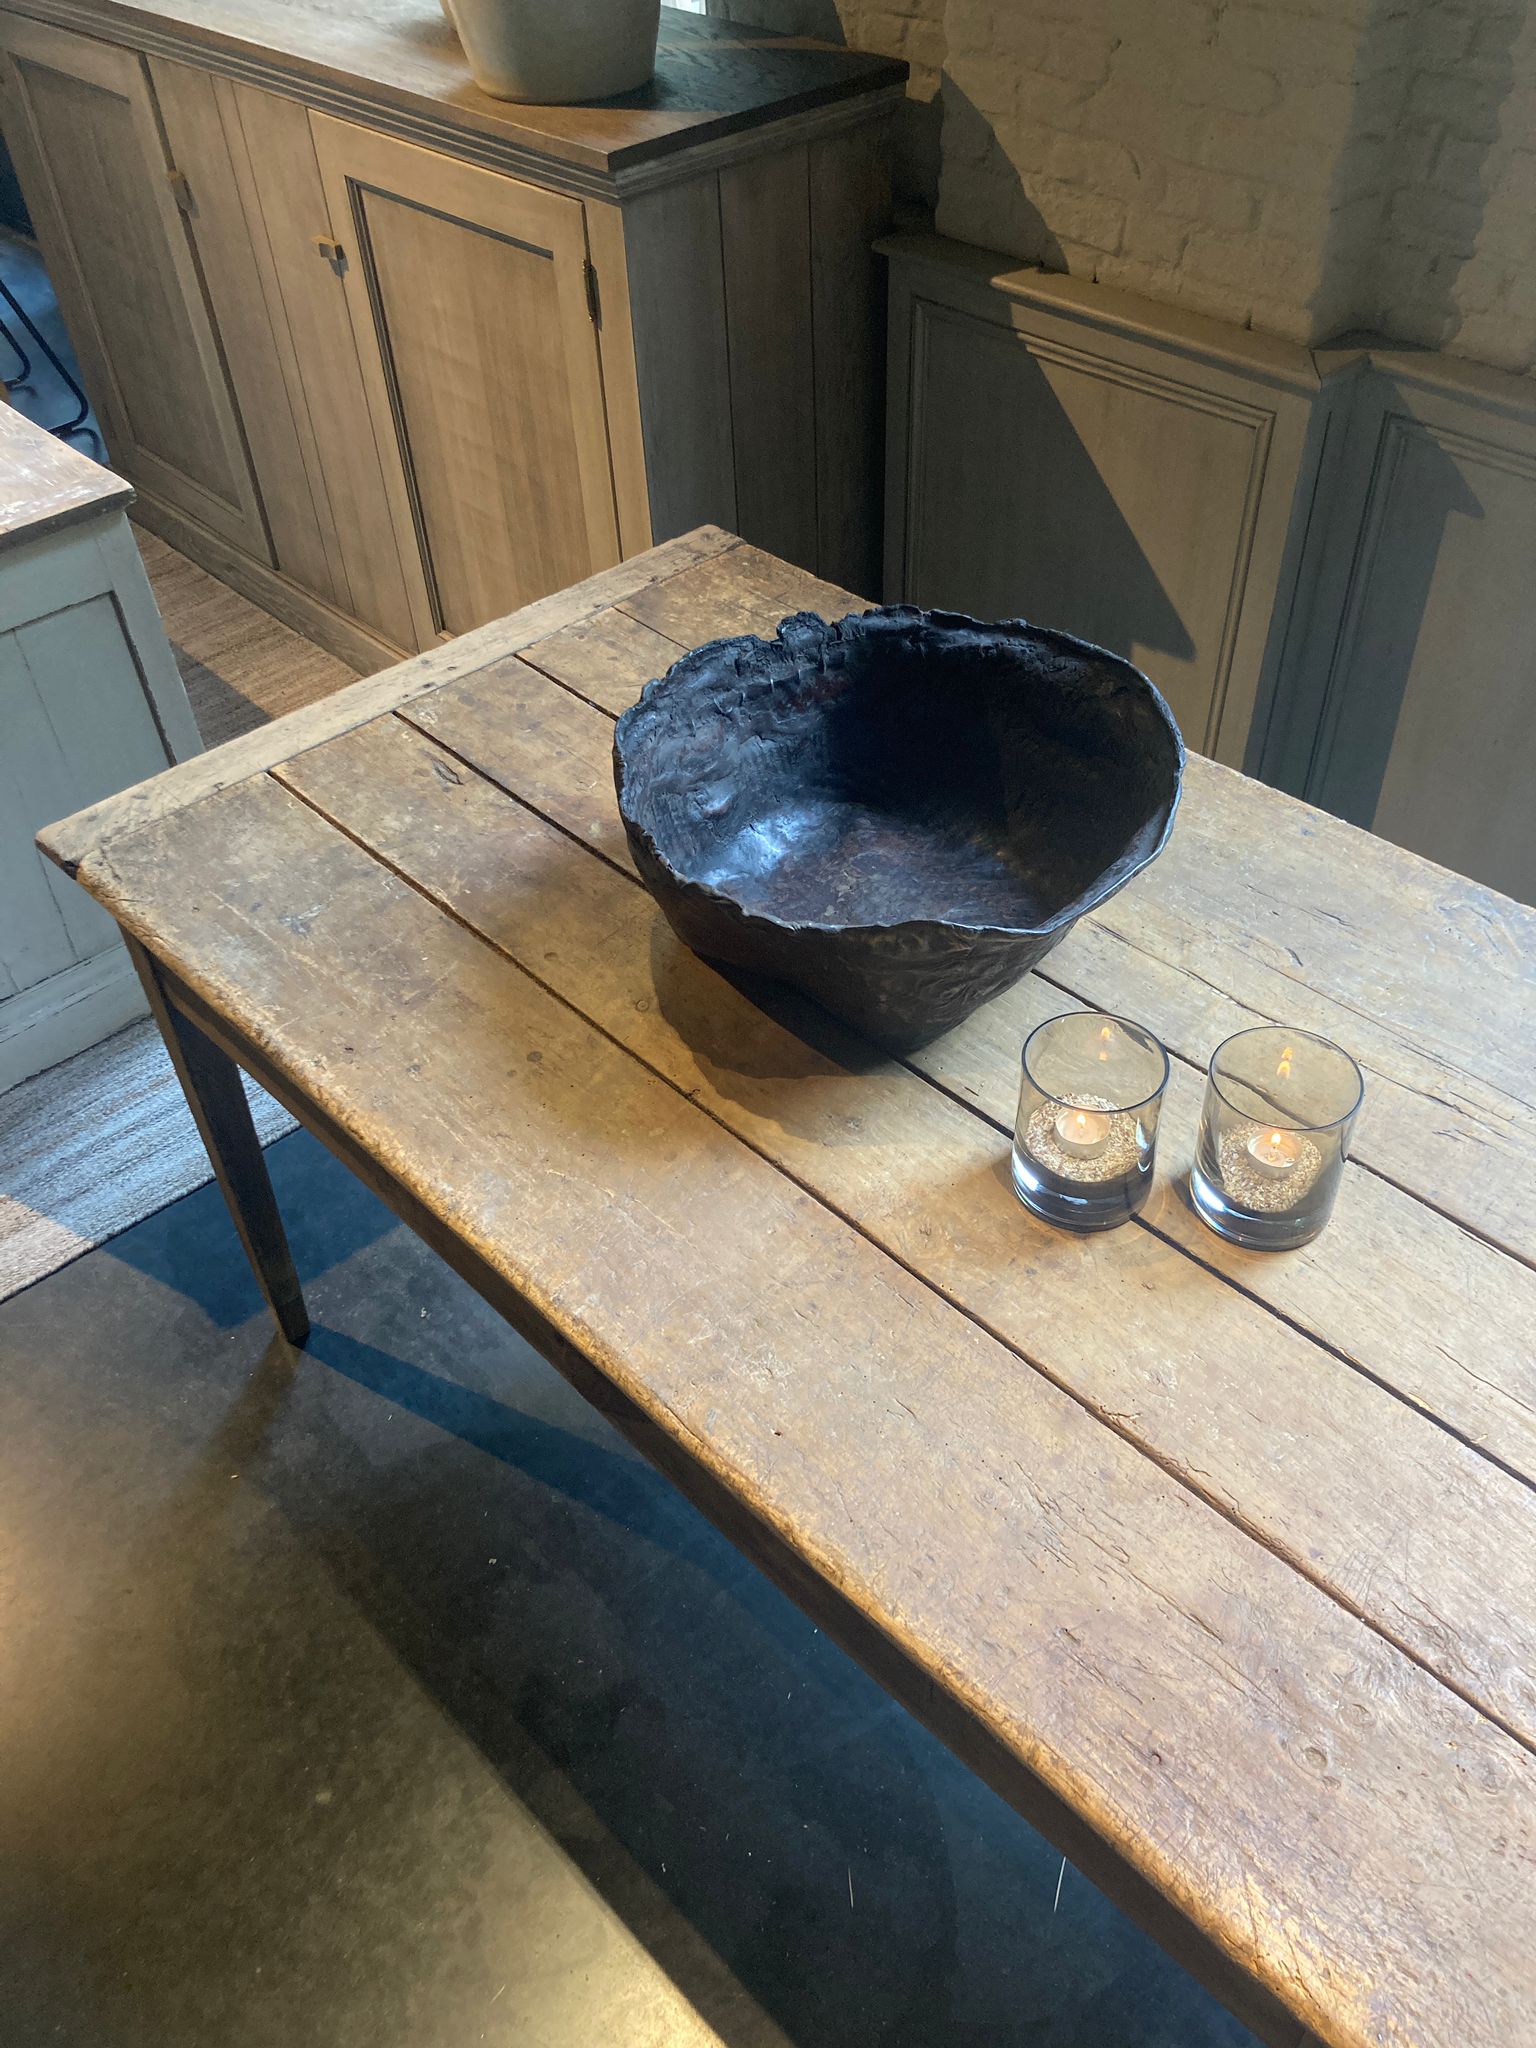 Woontheater Antwerpen Kloosterstraat Interieur meubels oude tafel hout verweerd rustiek authentiek robuust eettafel keuken eetkamer